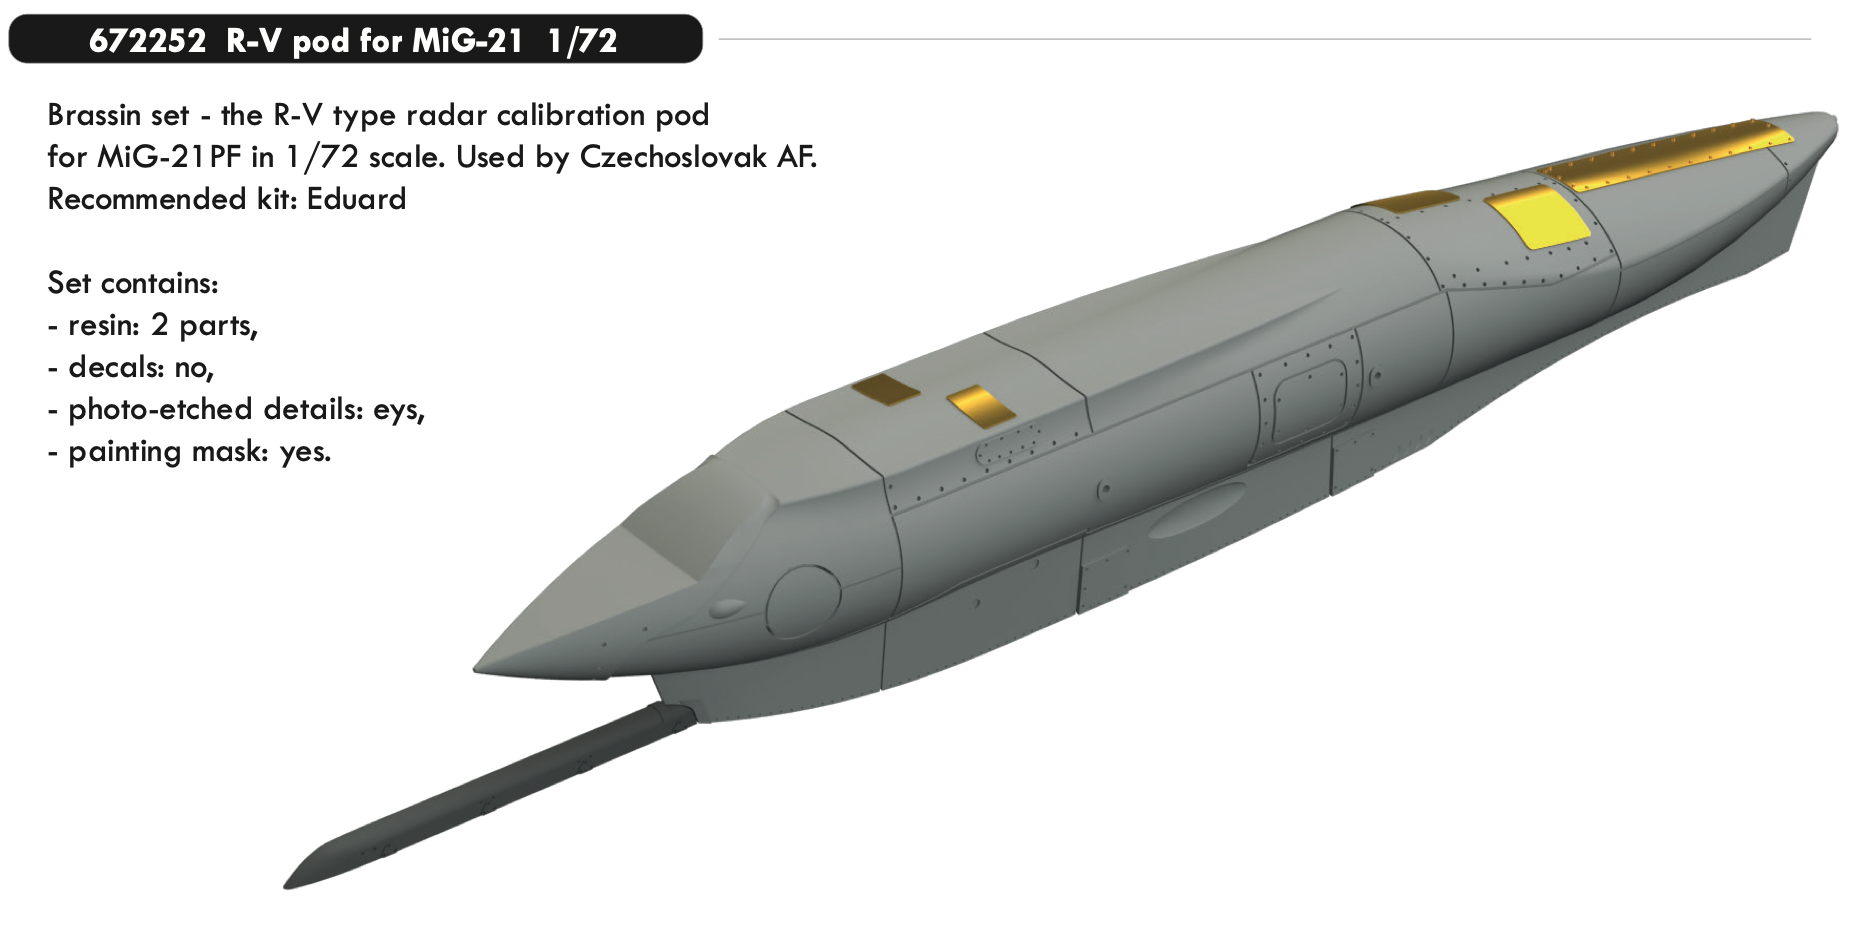 Дополнения из смолы 1/72 R-V pod for Mikoyan MiG-21 (для модели Eduard)